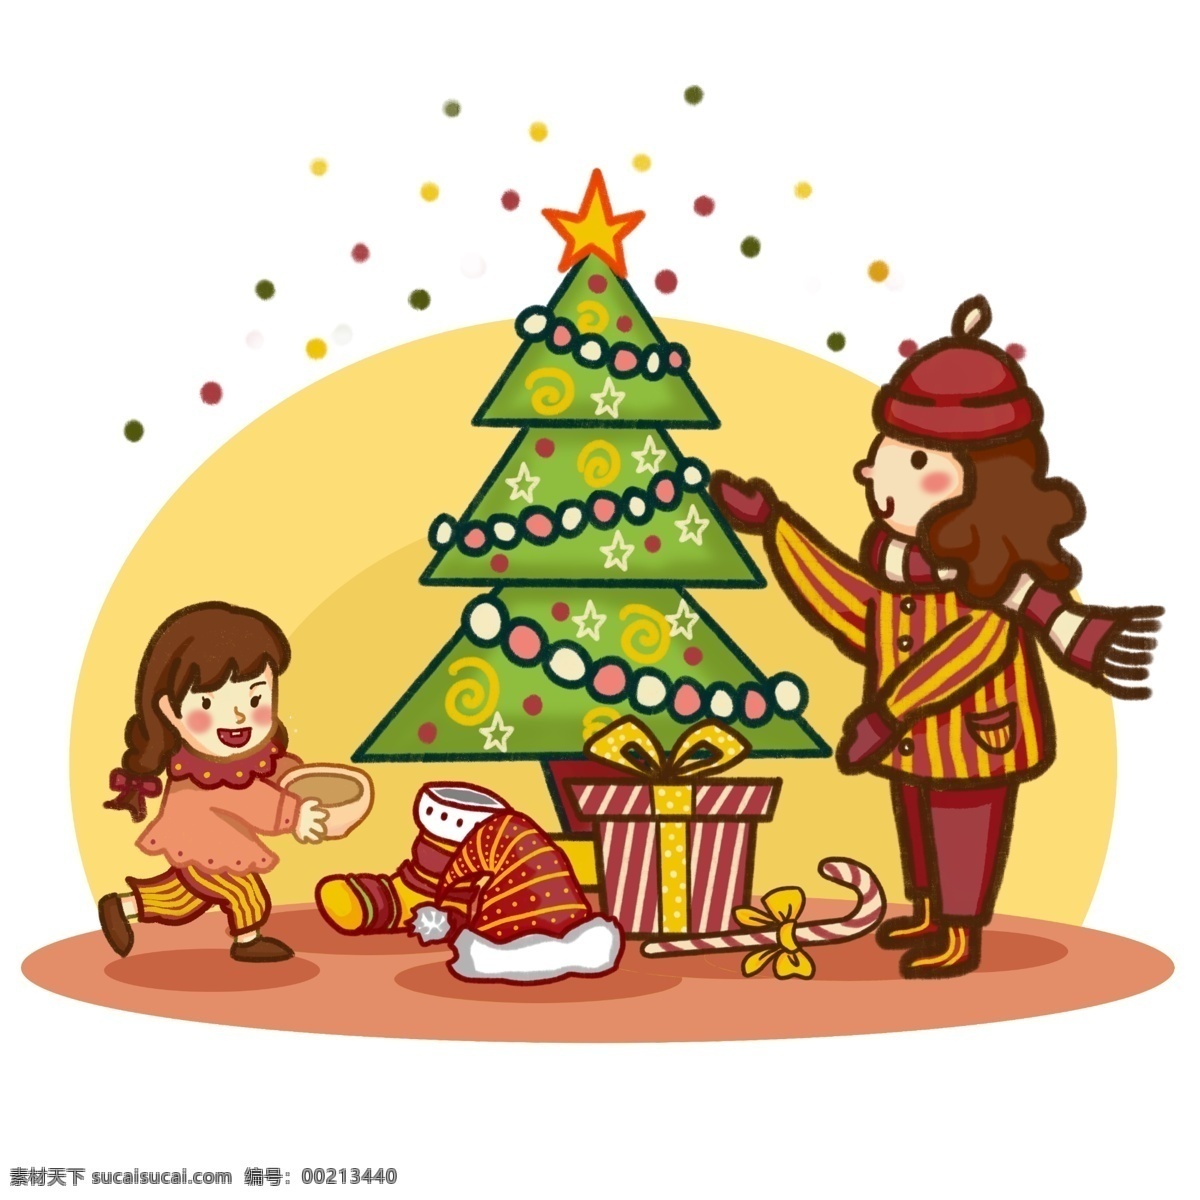 原创 手绘 风 插画 圣诞节 喜庆 交换 礼物 元素 圣诞树 手绘风 板绘 礼物盒 圣诞帽 帽子 圣诞袜 袜子 糖果 女孩 围巾